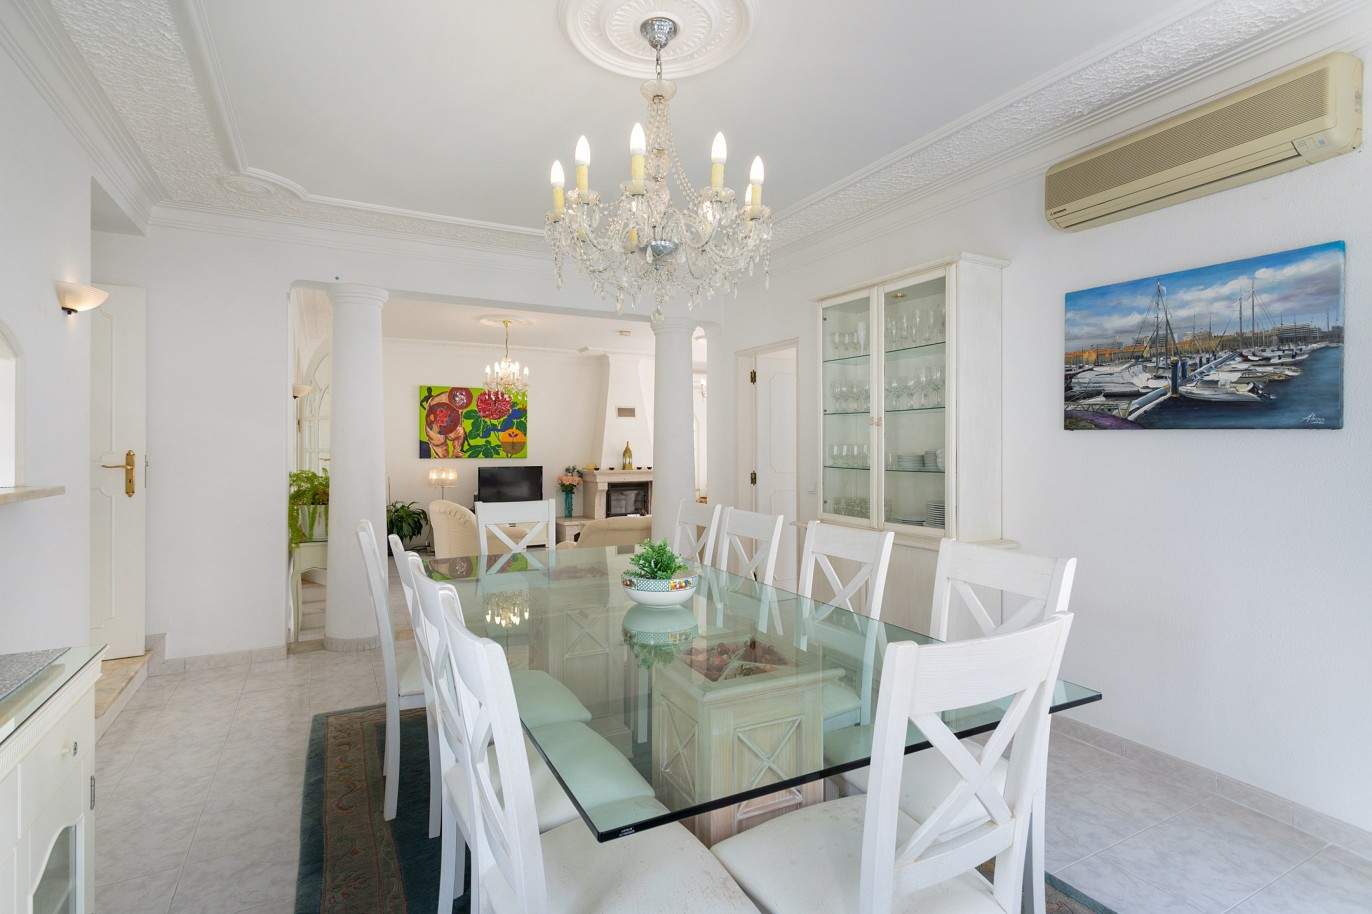 5 Bedroom Villa with swimming pool, for sale in Vilamoura, Algarve_212546